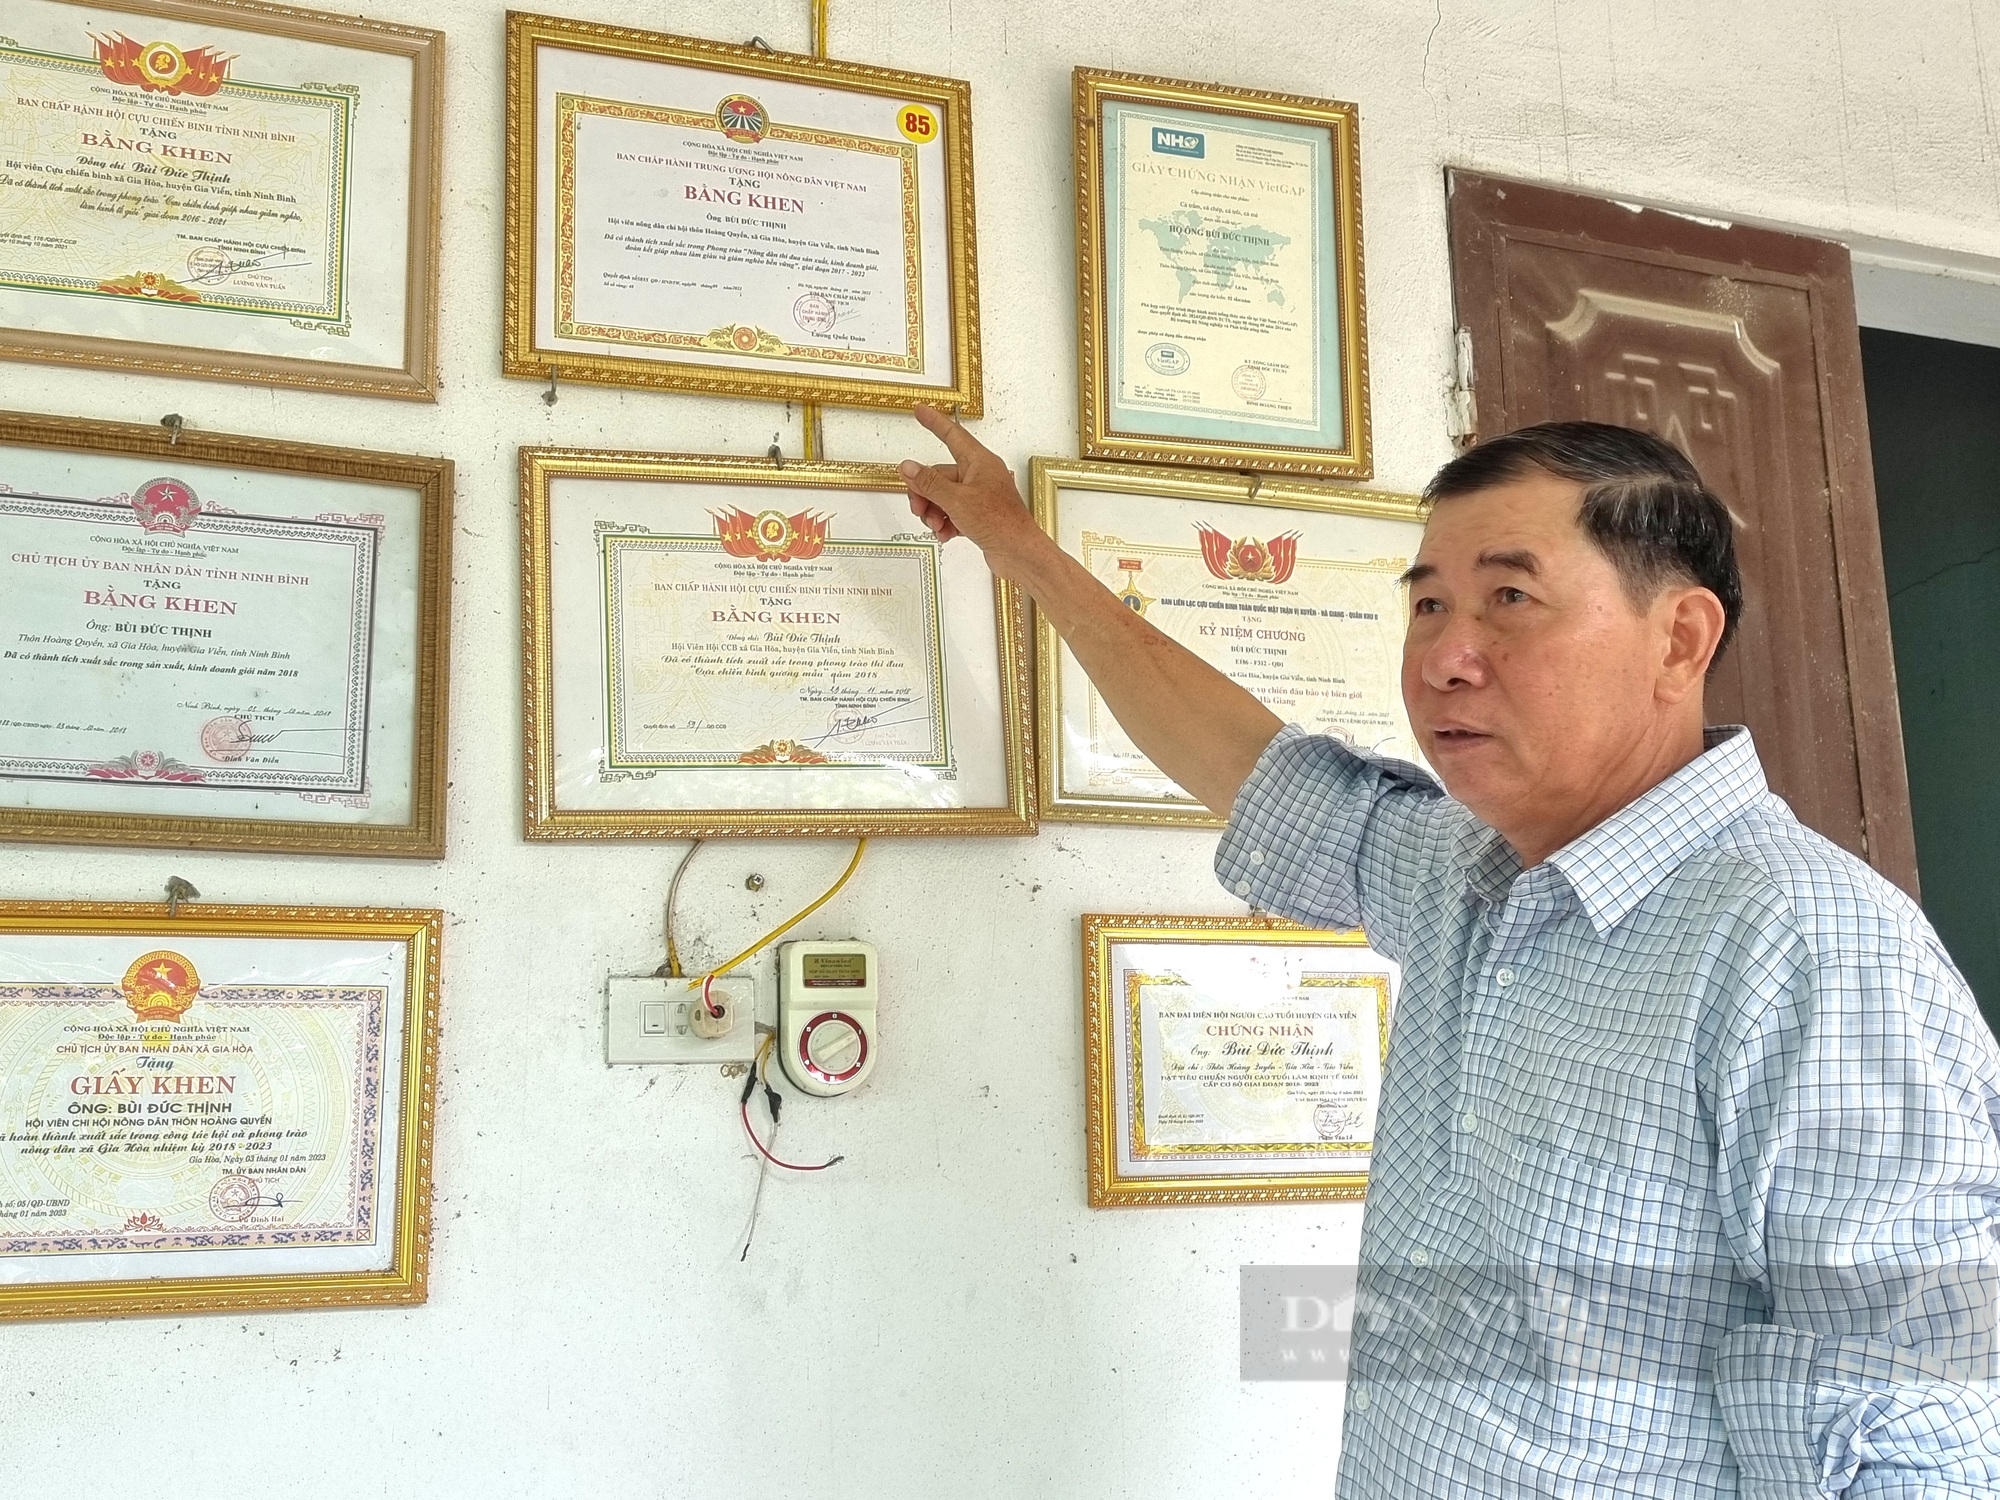 Chuyển đổi số trong nuôi cá nước ngọt, nông dân Việt Nam xuất sắc 2023 ở Ninh Bình có doanh thu gần 4 tỷ đồng - Ảnh 16.